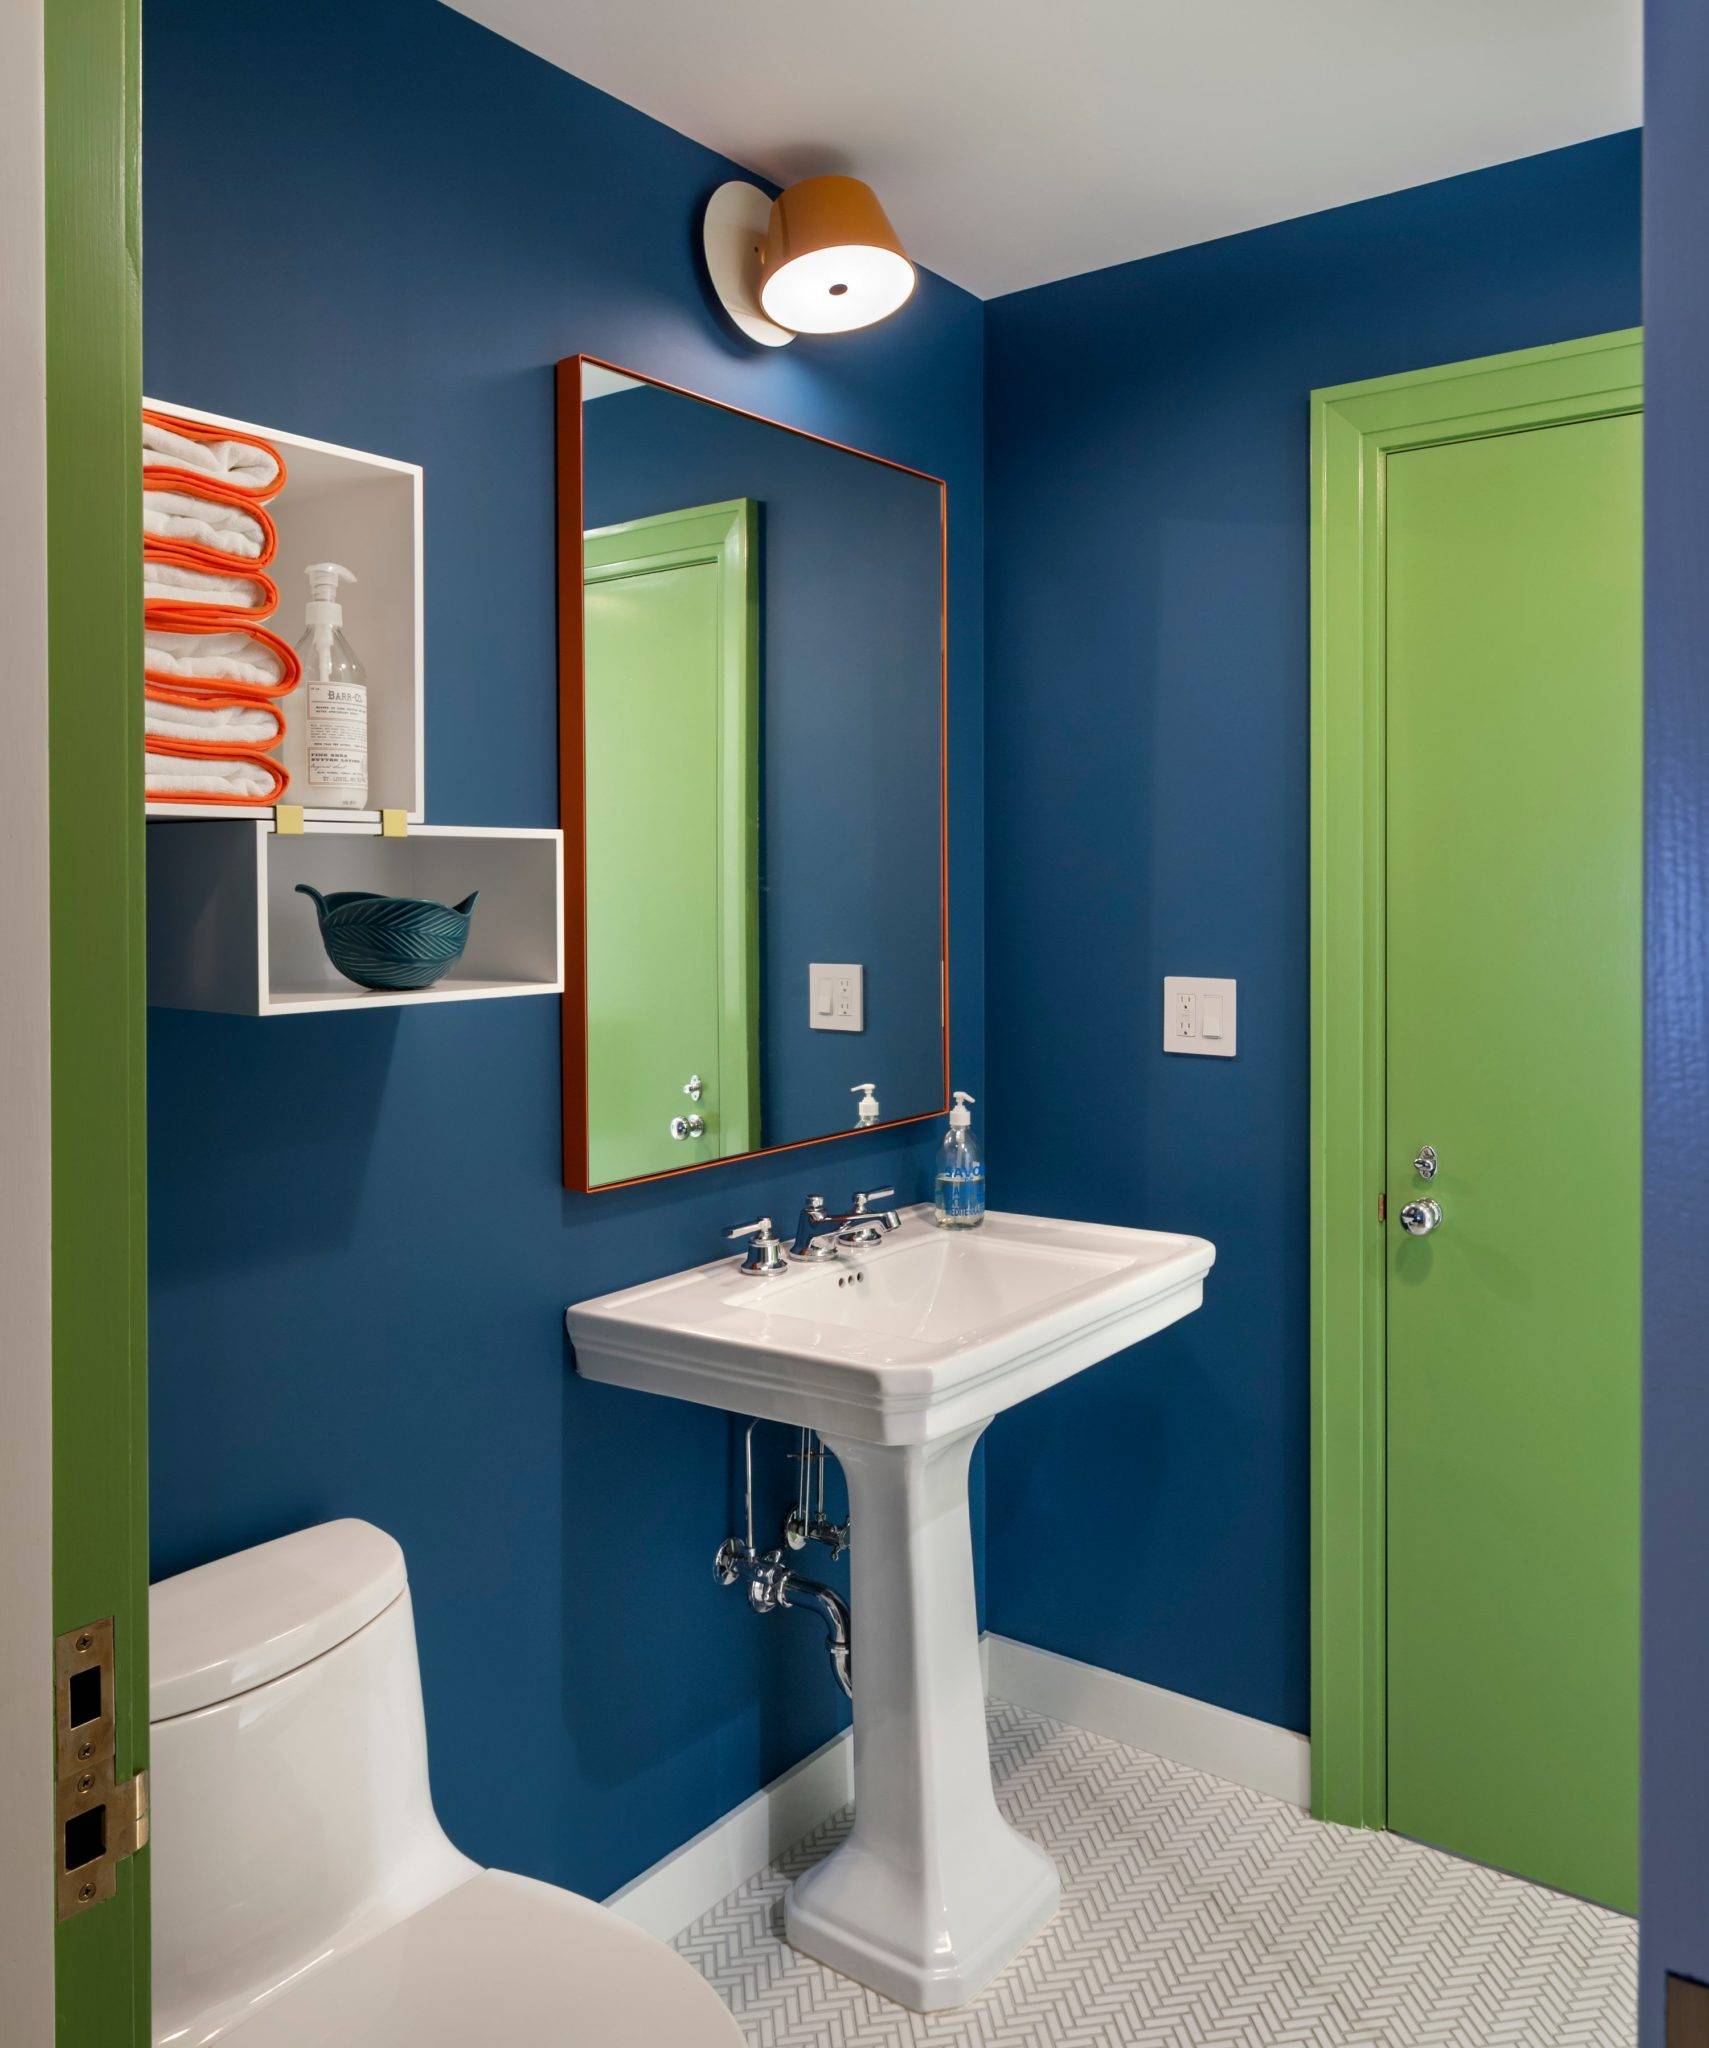 Что лучше — краска или плитка для отделки стен в ванной